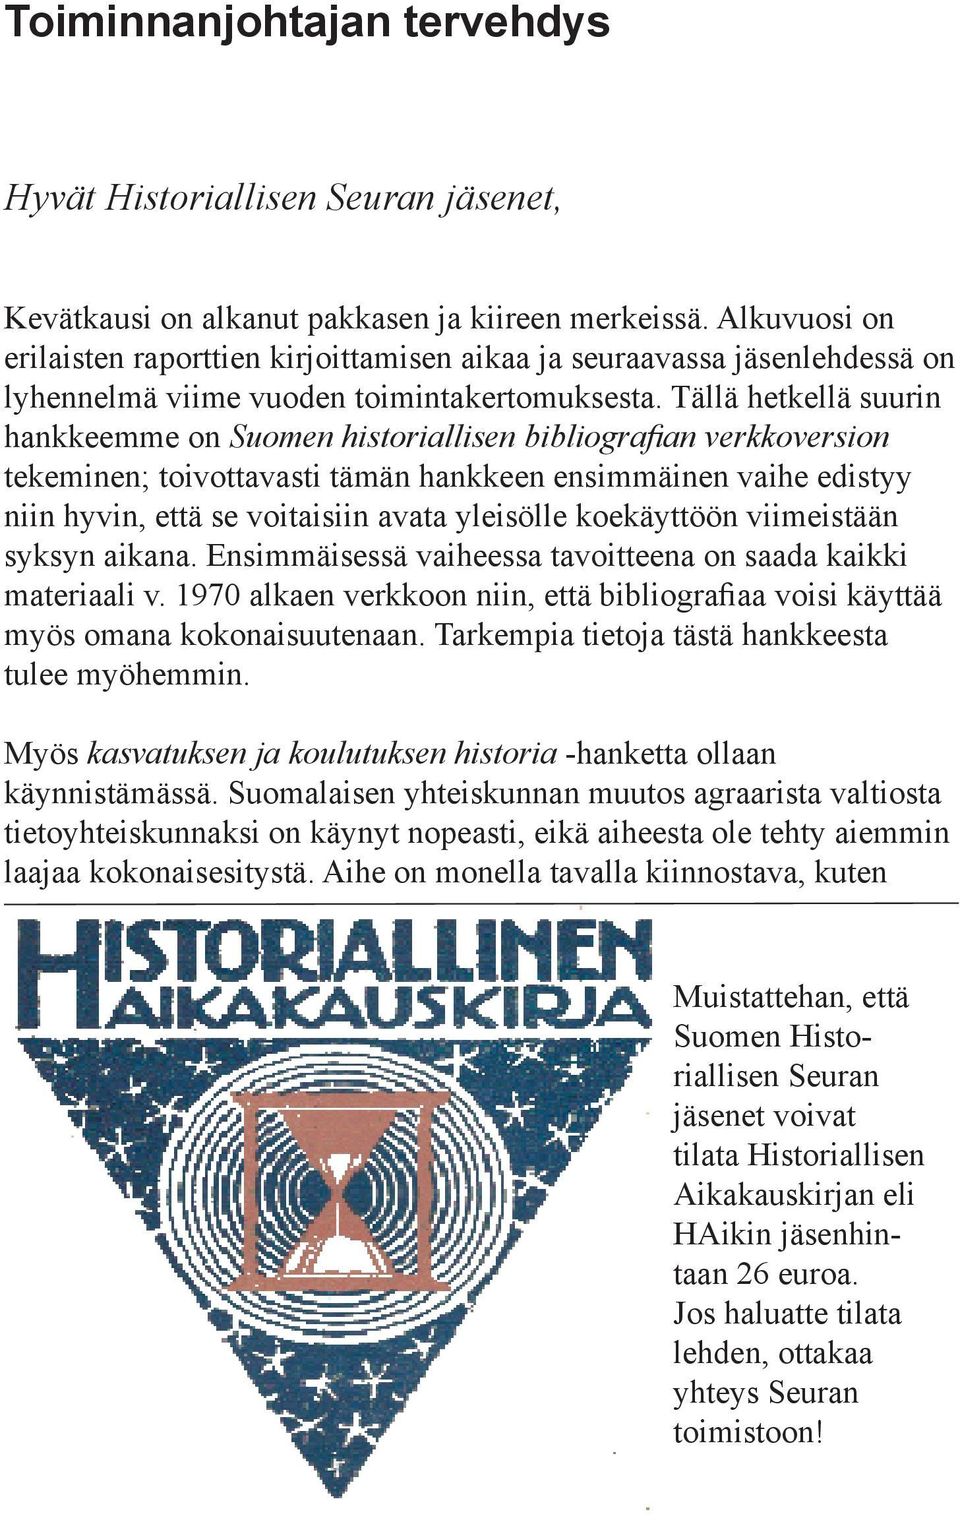 Tällä hetkellä suurin hankkeemme on Suomen historiallisen bibliografian verkkoversion tekeminen; toivottavasti tämän hankkeen ensimmäinen vaihe edistyy niin hyvin, että se voitaisiin avata yleisölle